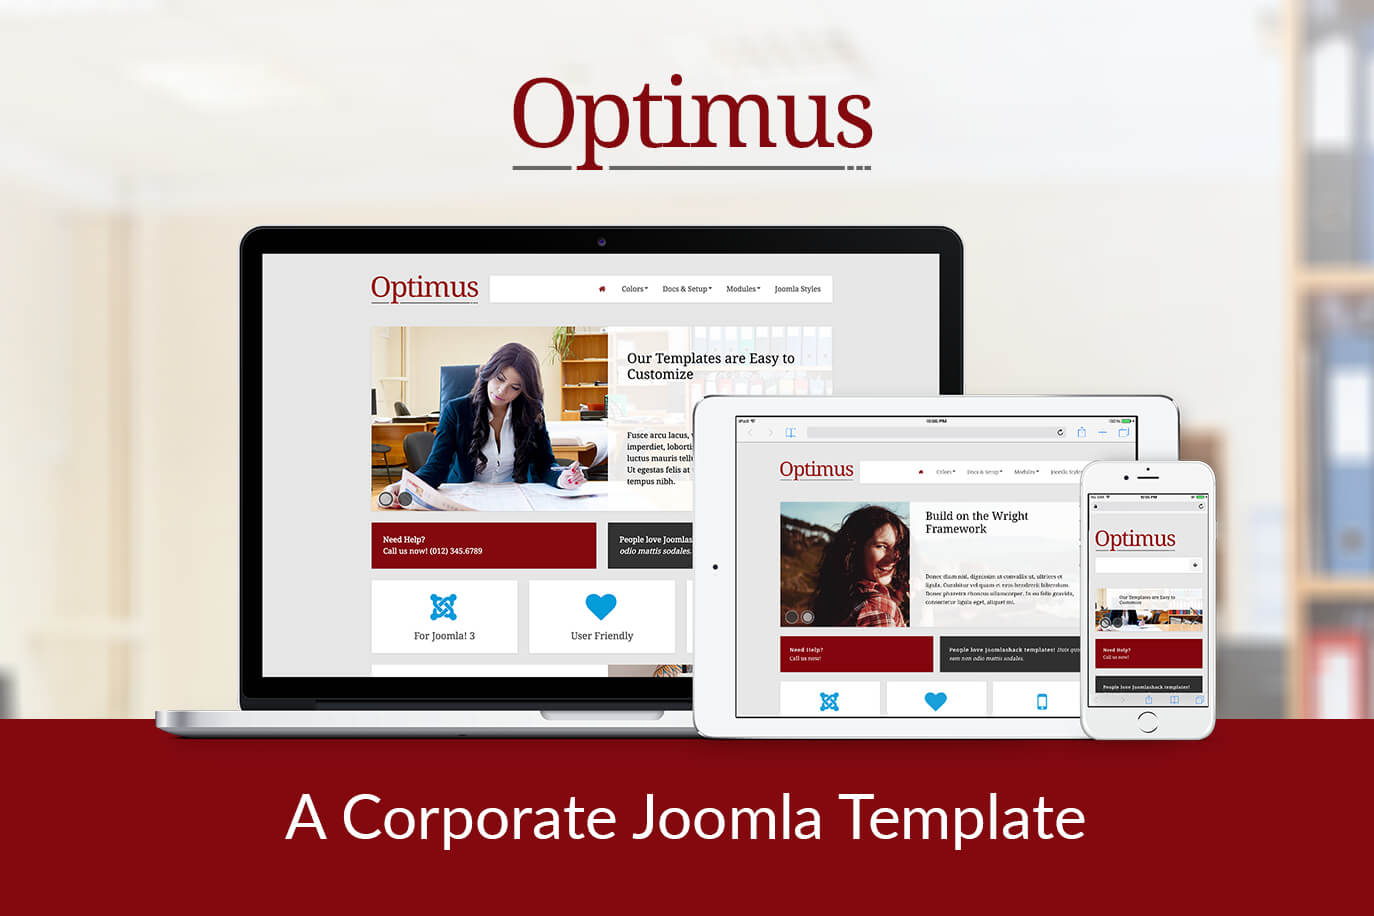 A minimalist and simple Joomla template - Optimus